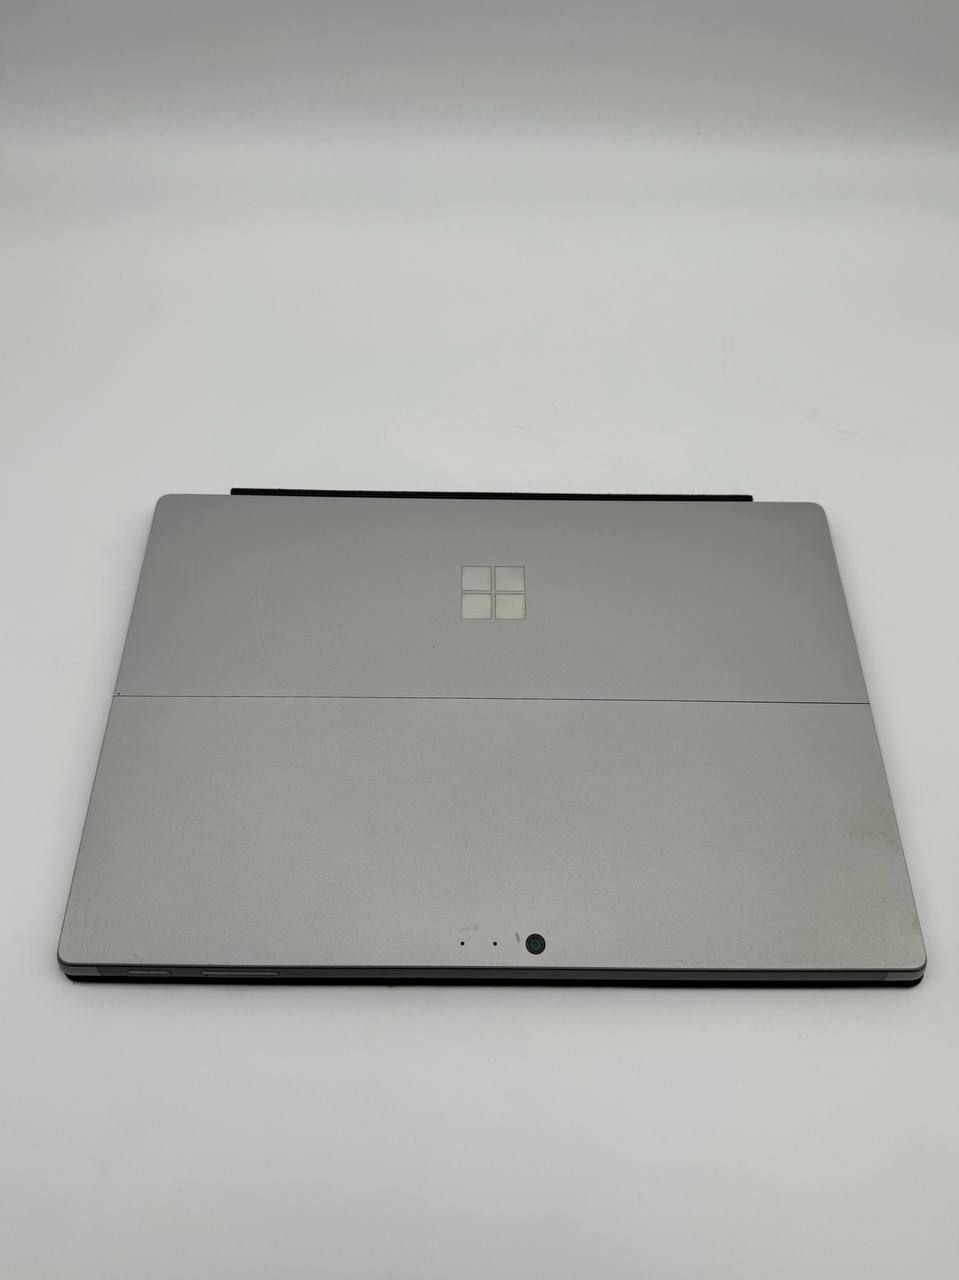 Microsoft Surface PRO 5